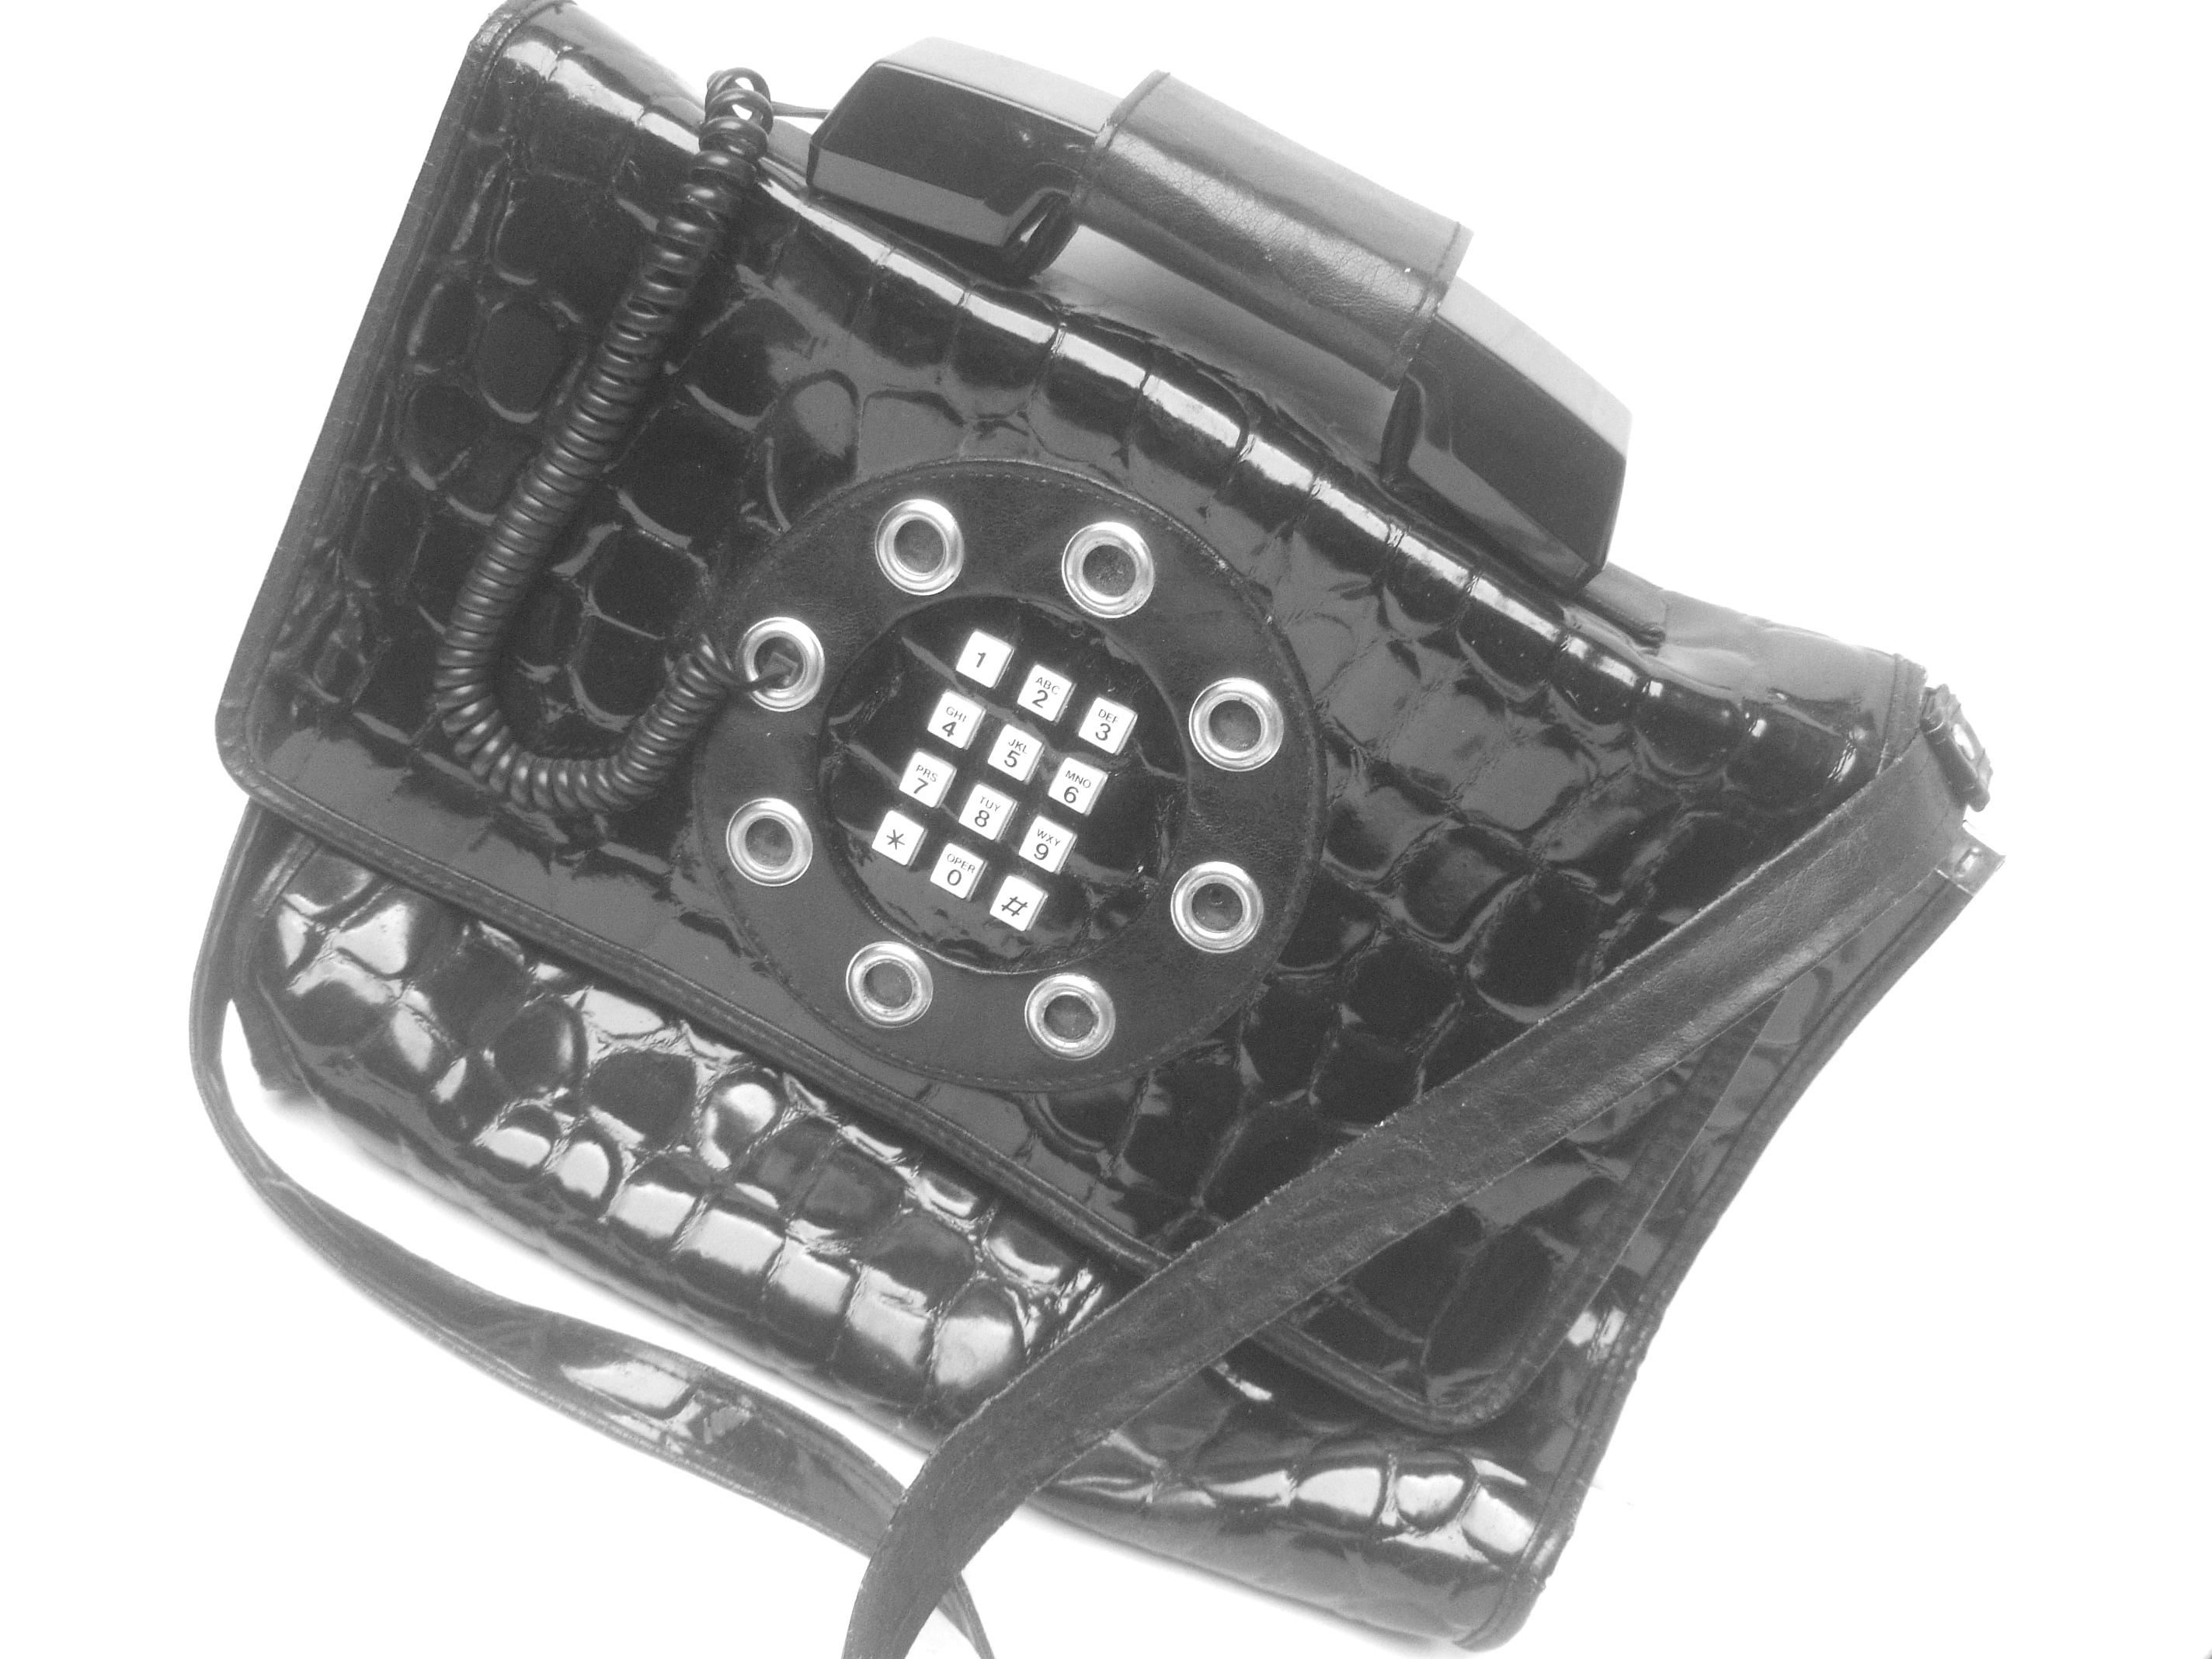 bag phone 1980s